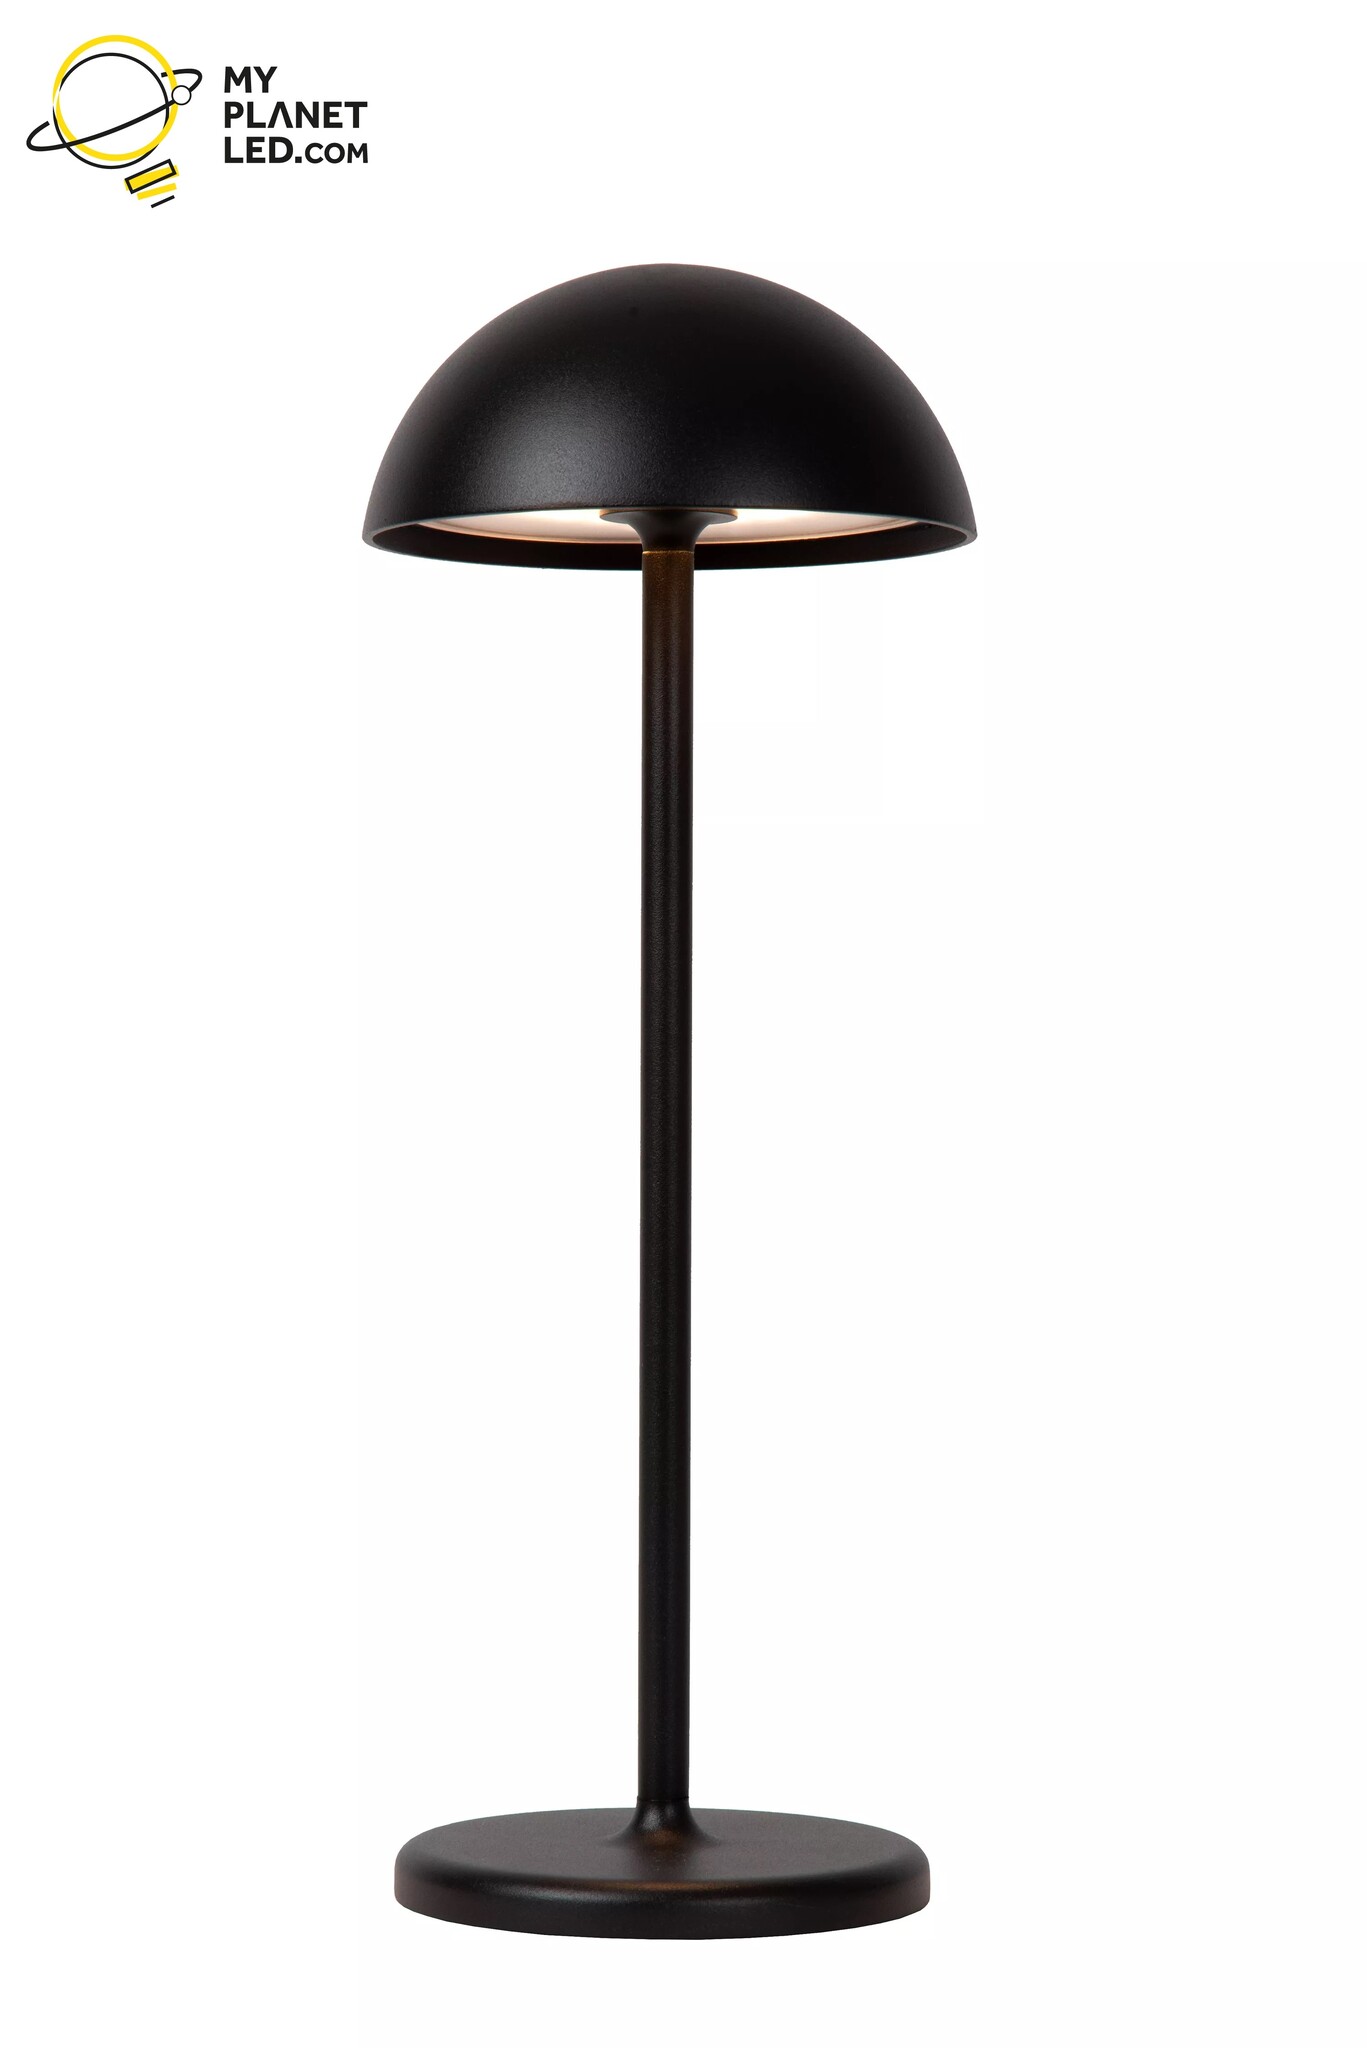 LAMPE A POSER,black--Lampe LED sans fil Rechargeable en métal